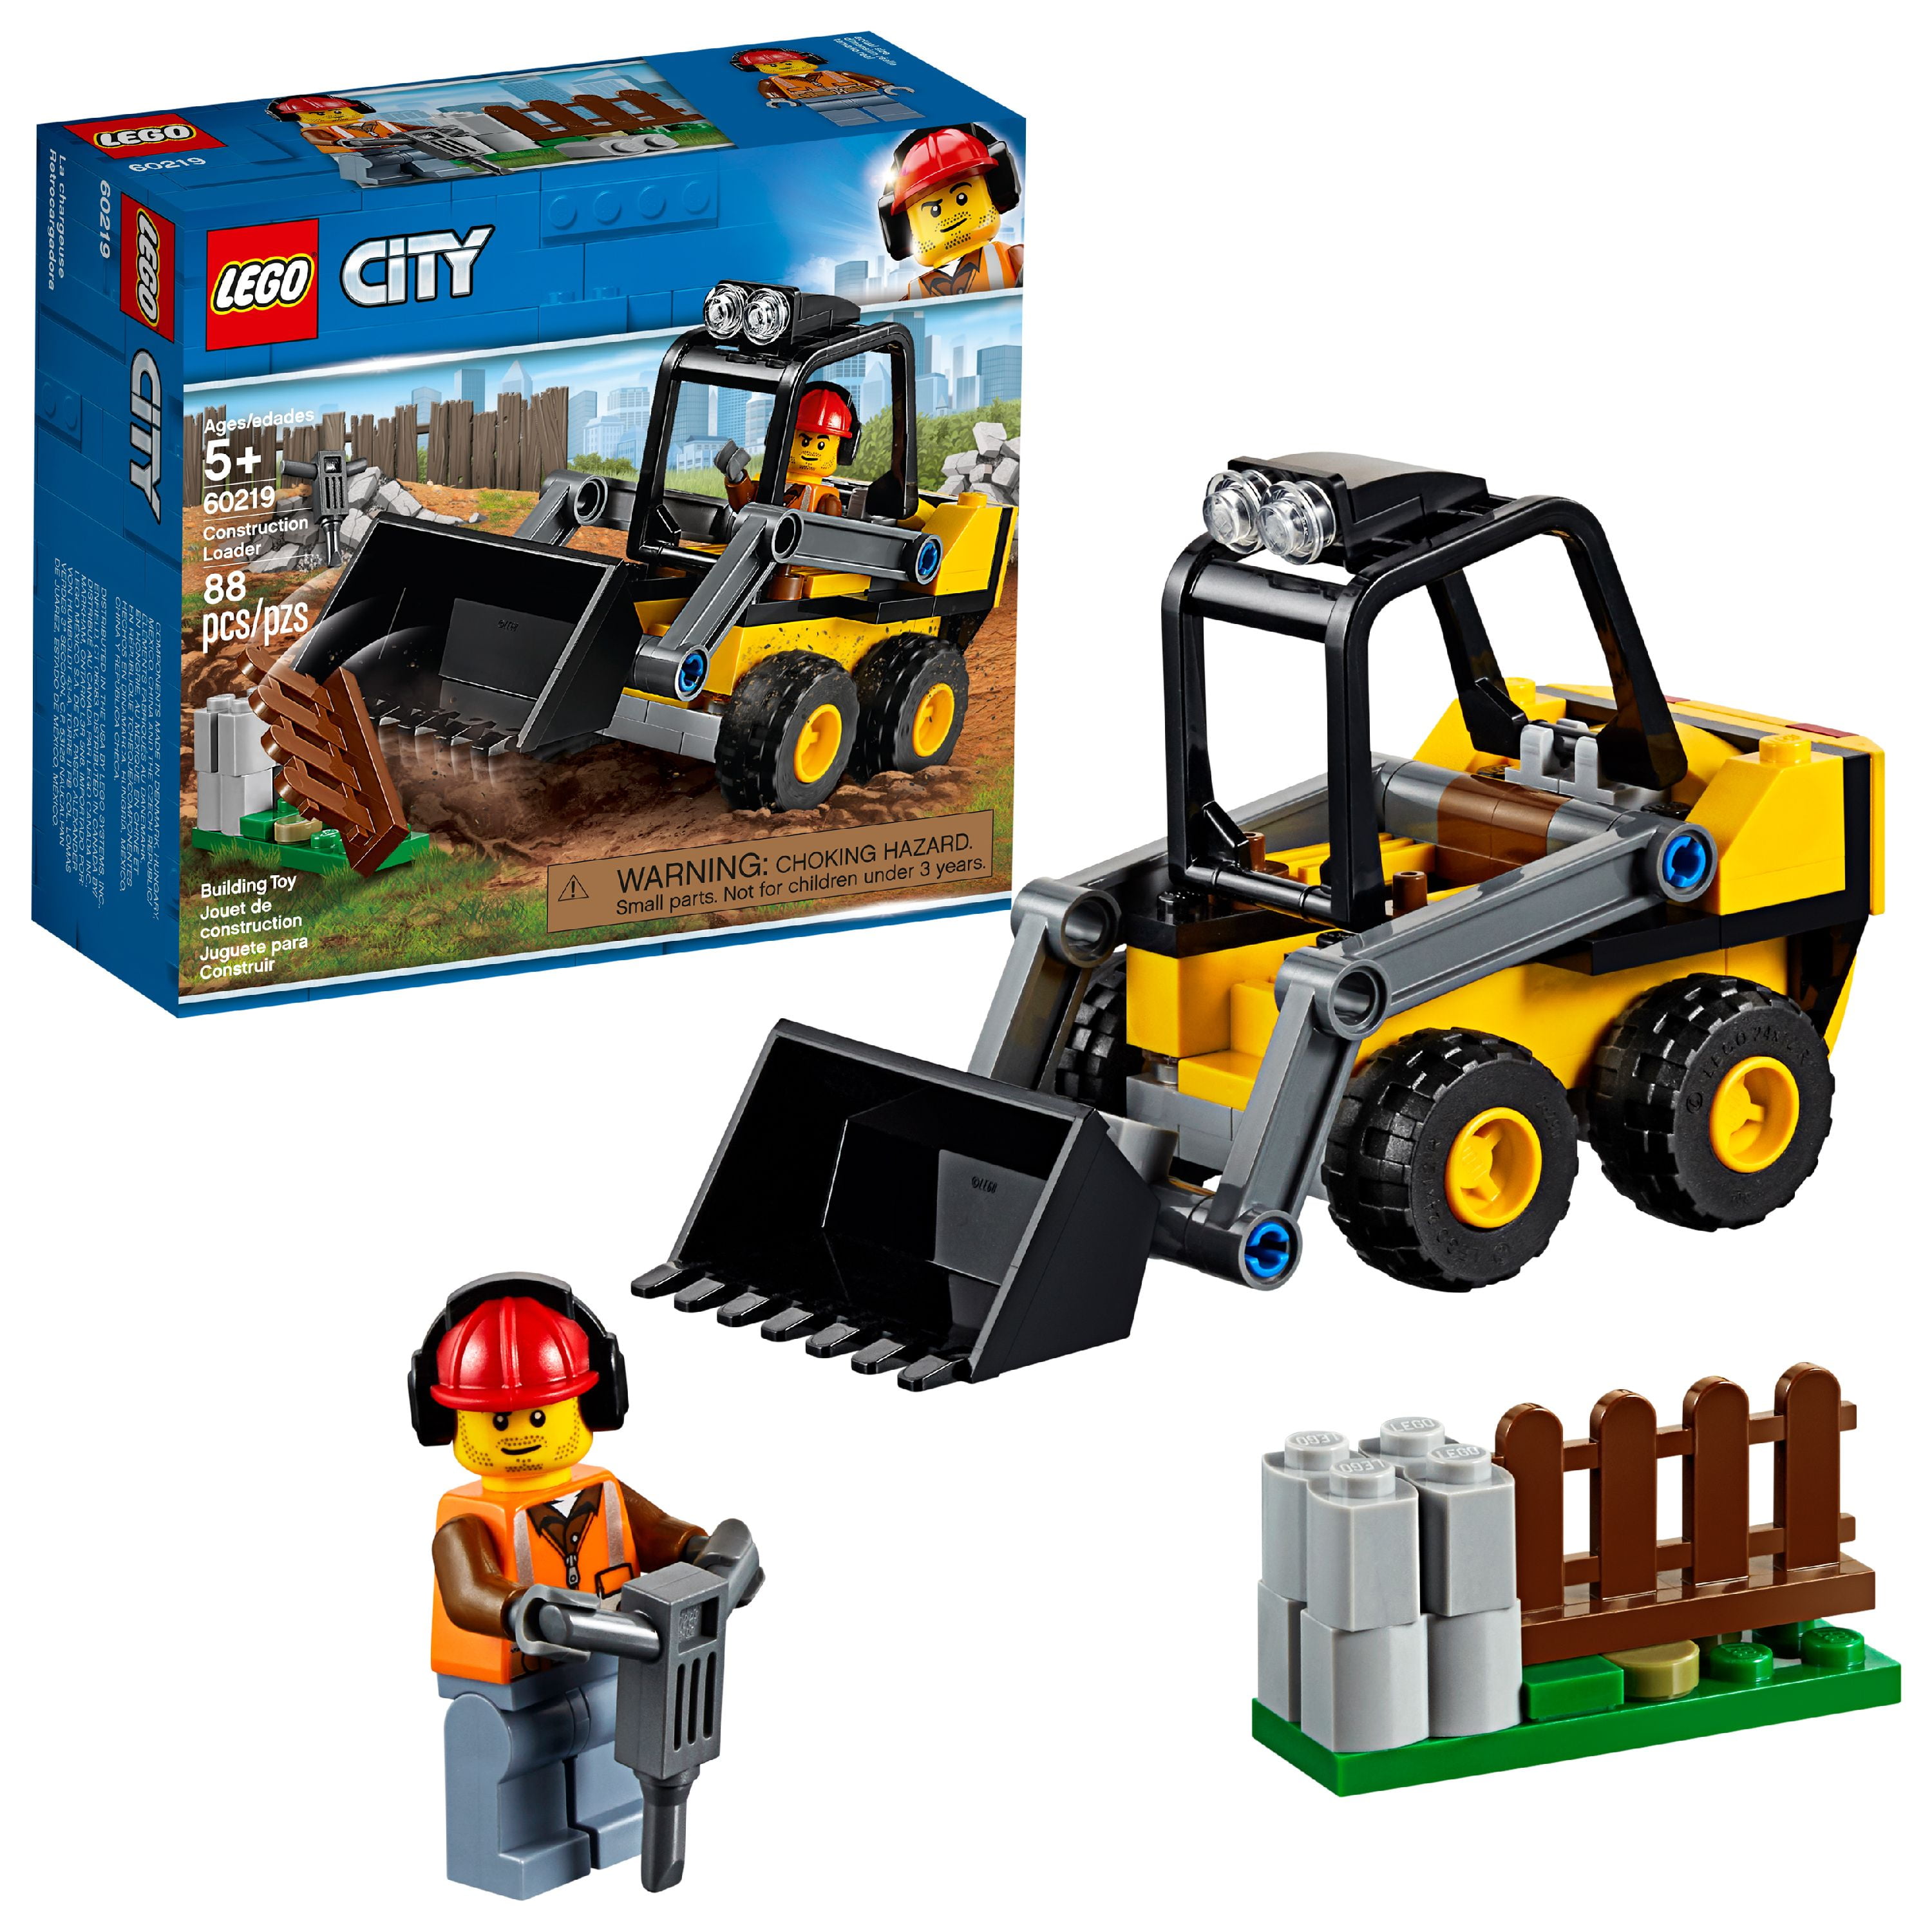 fusionere Gøre en indsats udtale LEGO City Great Vehicles Loader 60219 Construction Truck Set - Walmart.com